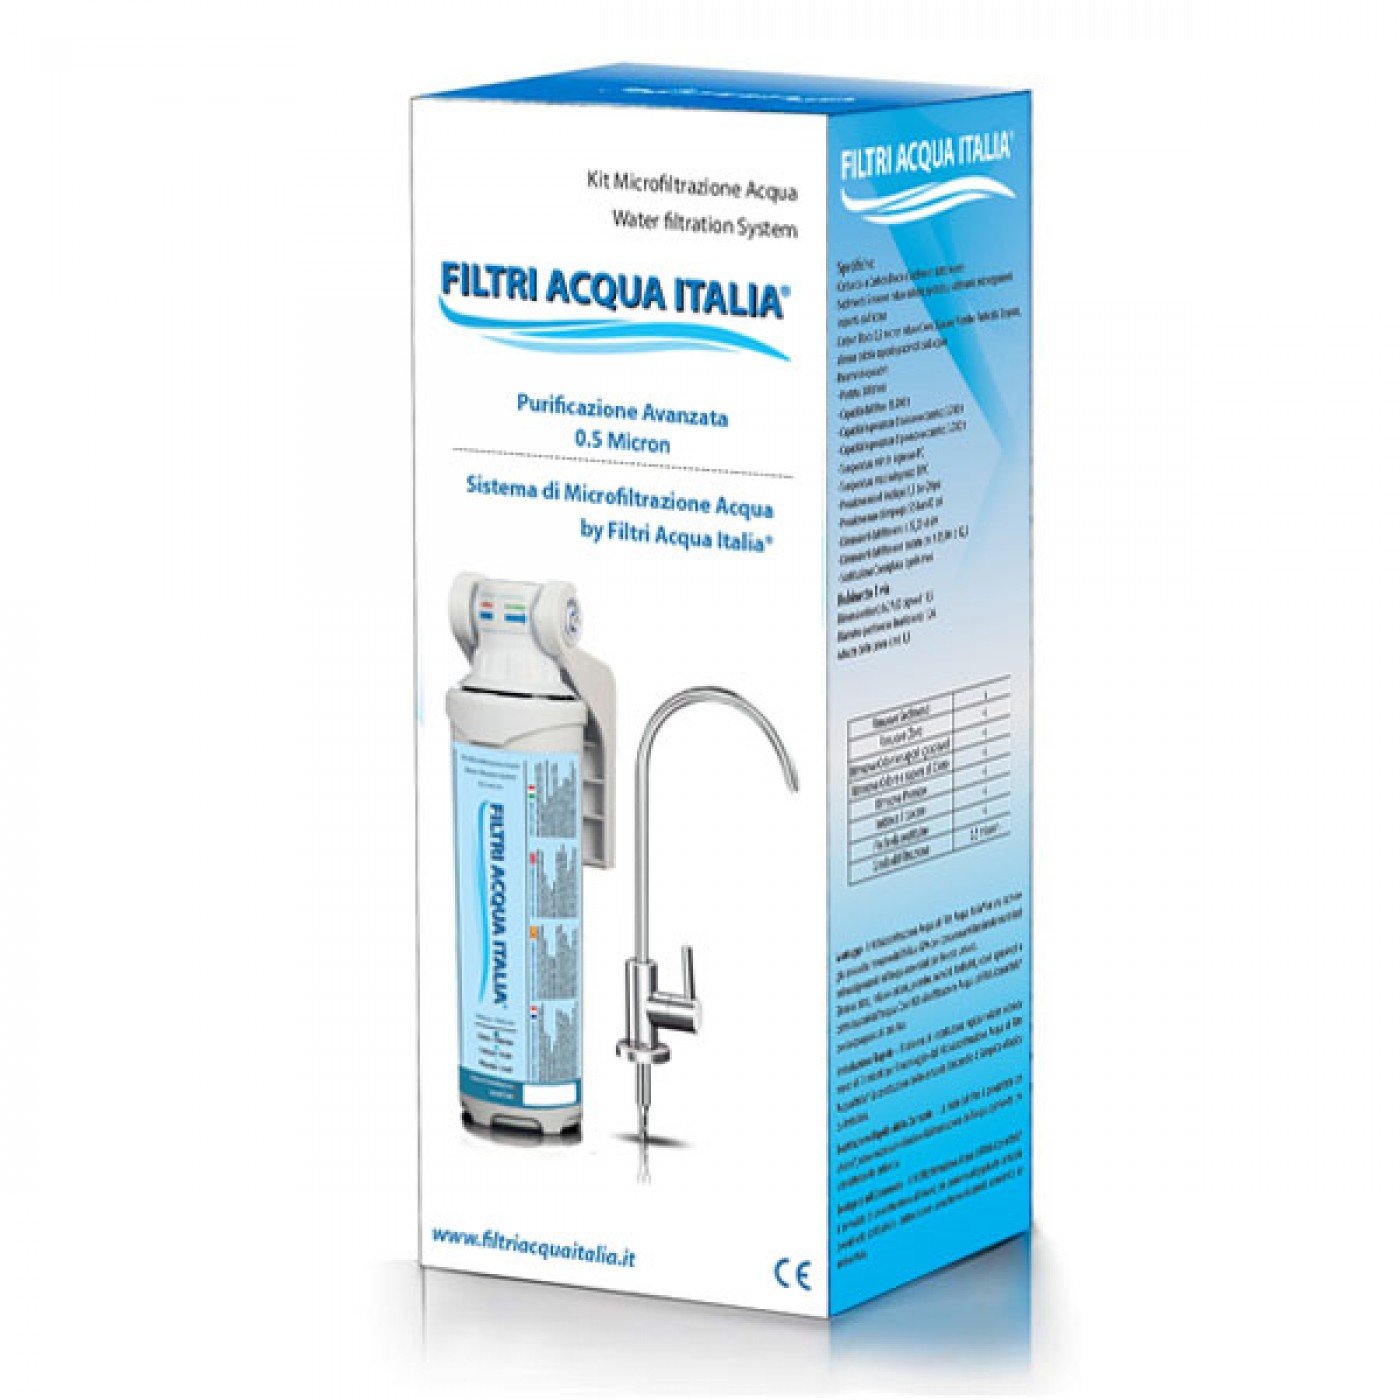 Sistema di Microfiltrazione Acqua di Filtri Acqua Italia®